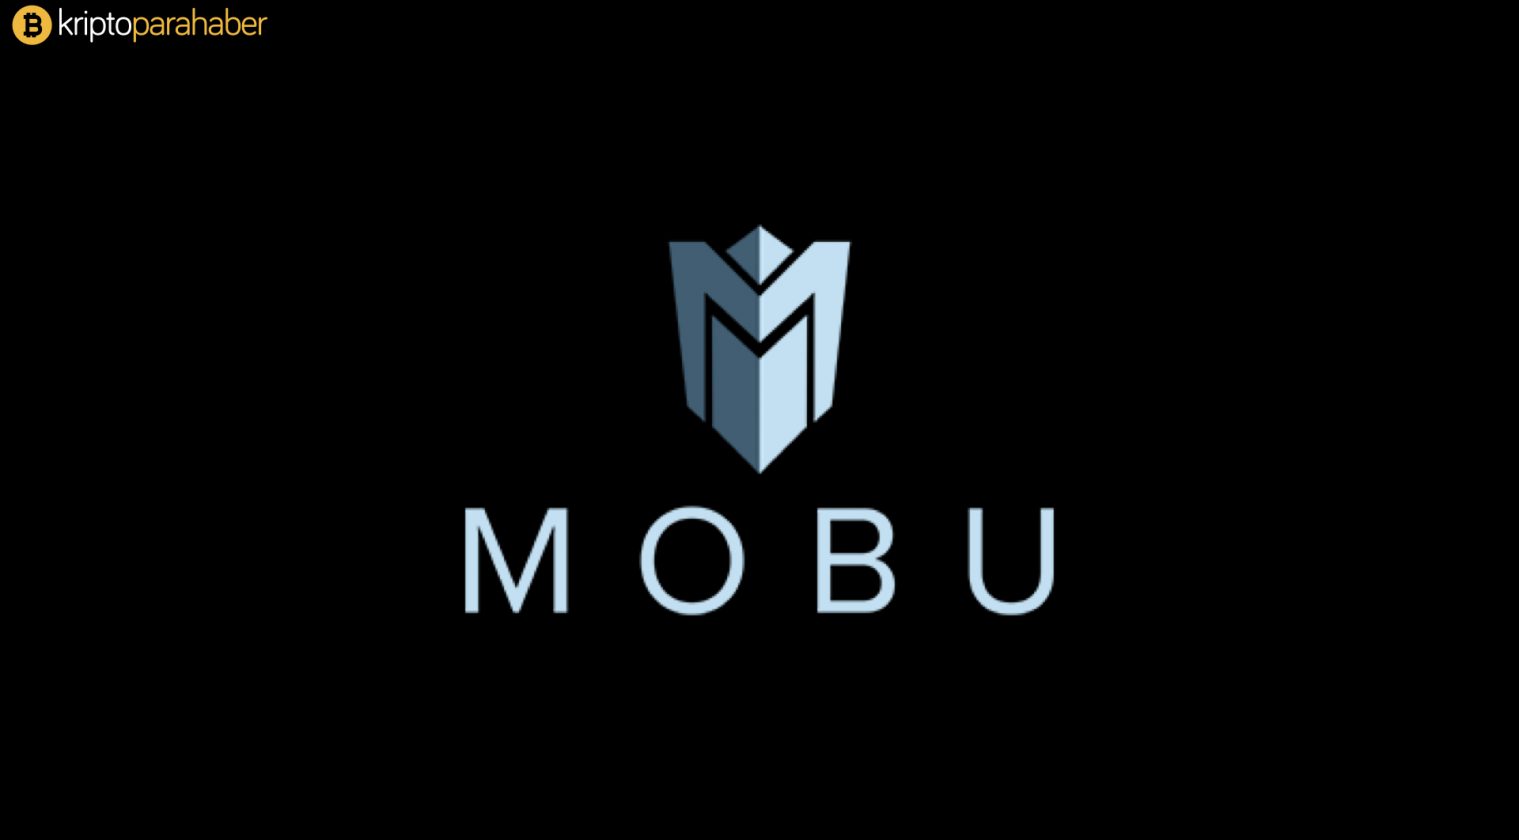 Mobu